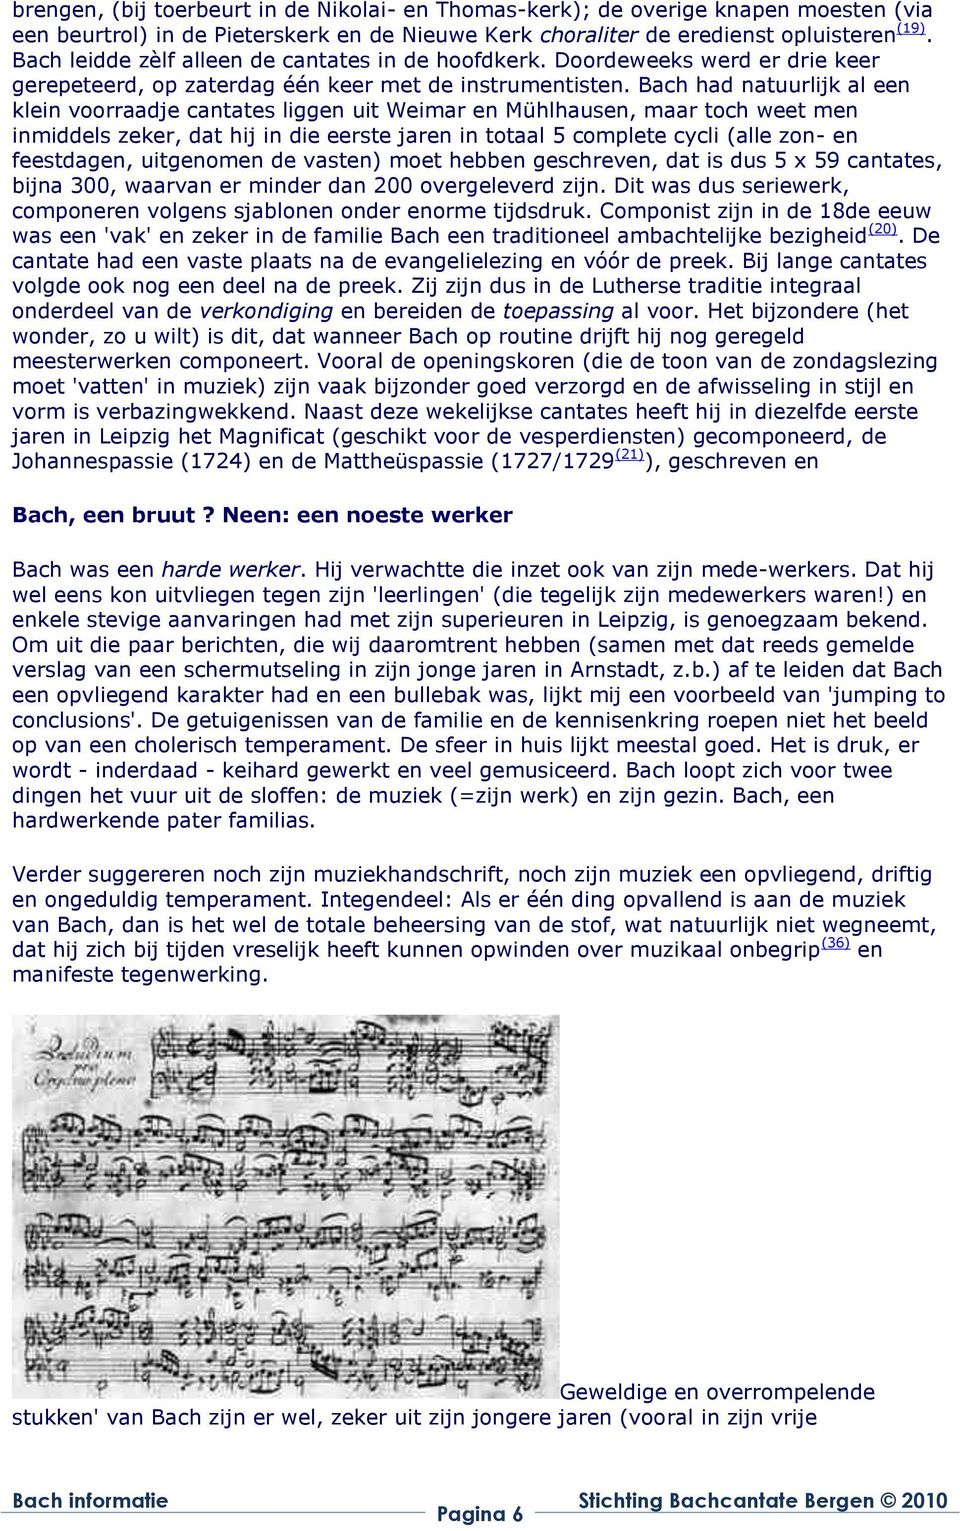 Bach had natuurlijk al een klein voorraadje cantates liggen uit Weimar en Mühlhausen, maar toch weet men inmiddels zeker, dat hij in die eerste jaren in totaal 5 complete cycli (alle zon- en